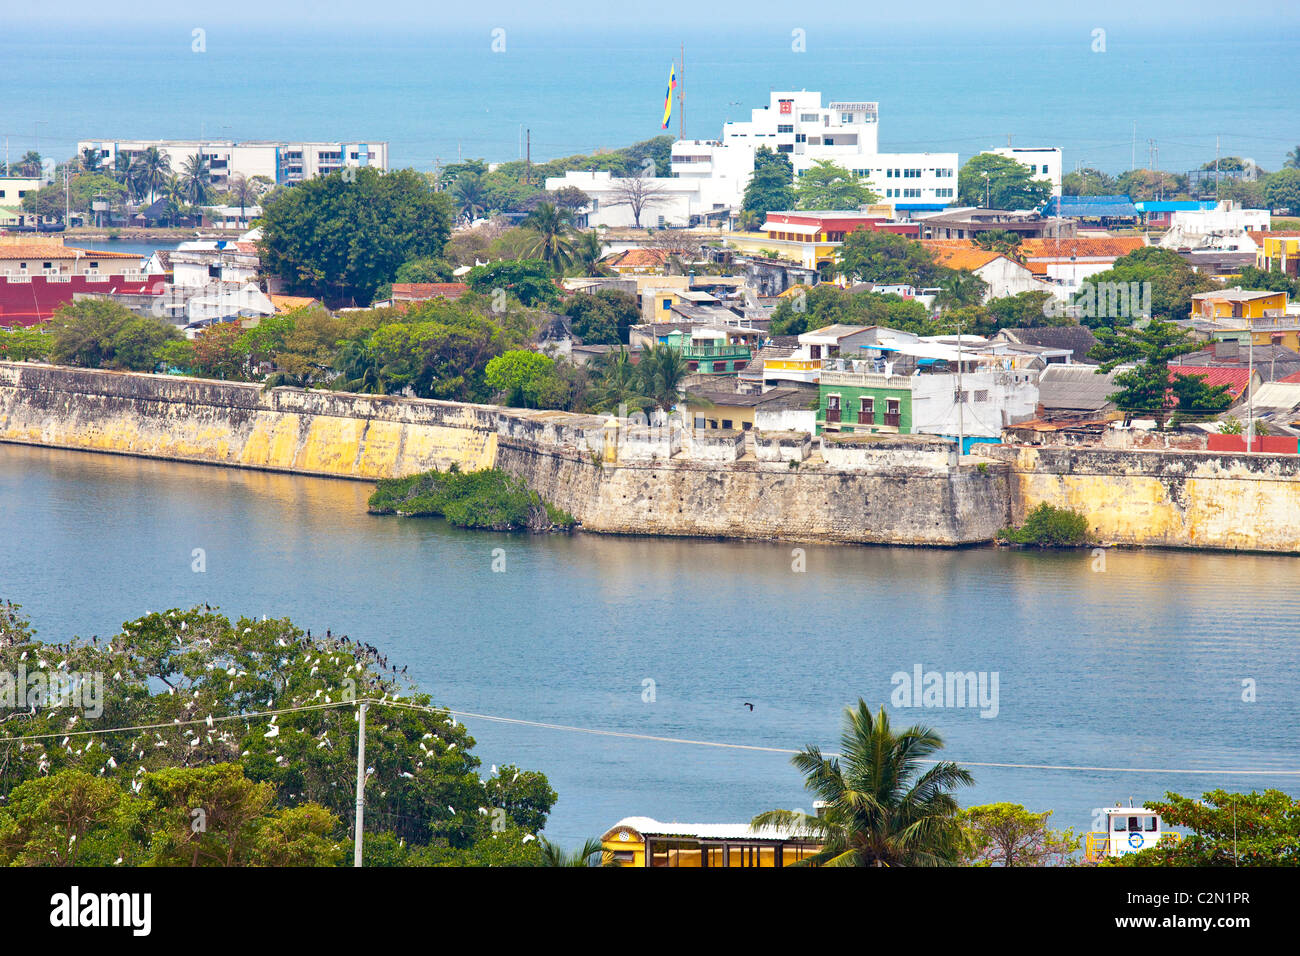 Las murallas que rodean el casco antiguo de la ciudad, Cartagena, Colombsia Foto de stock